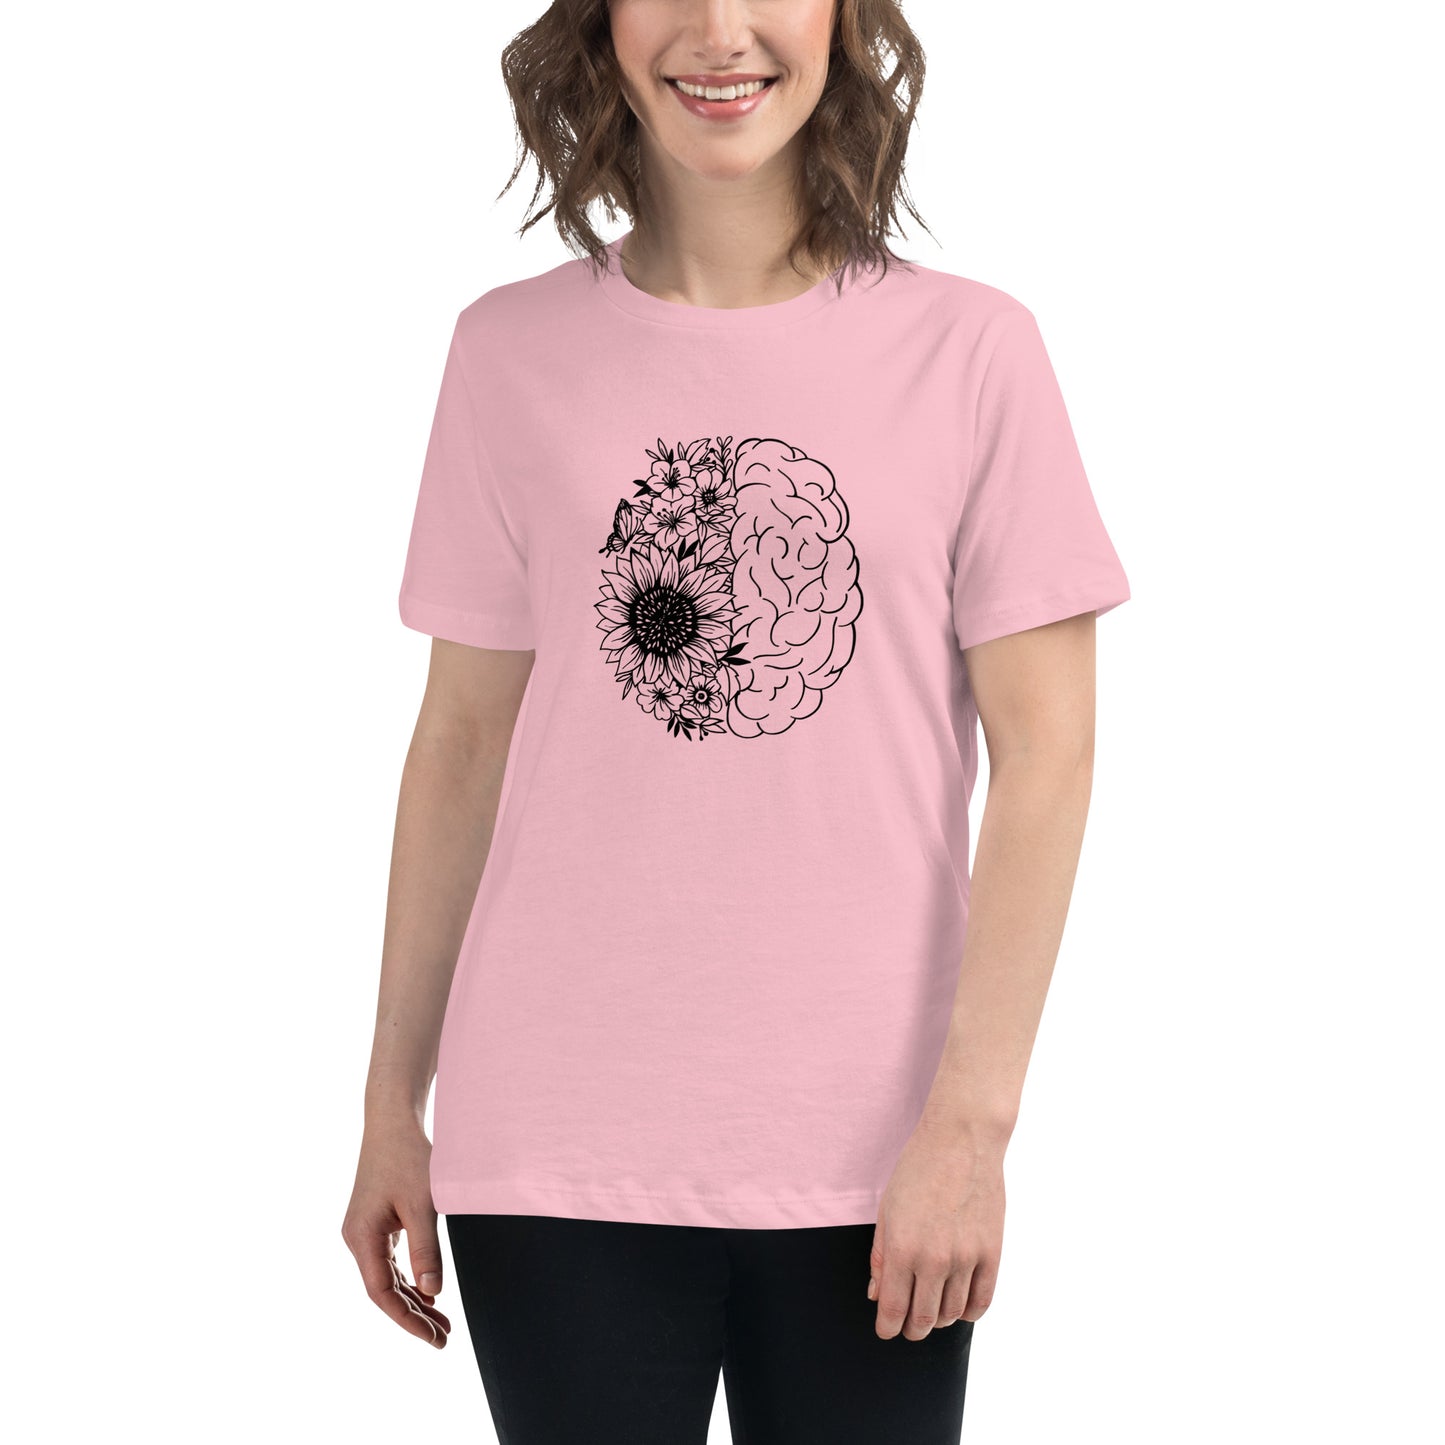 Neurodivergent Brain + Flowers - Women’s T-shirt